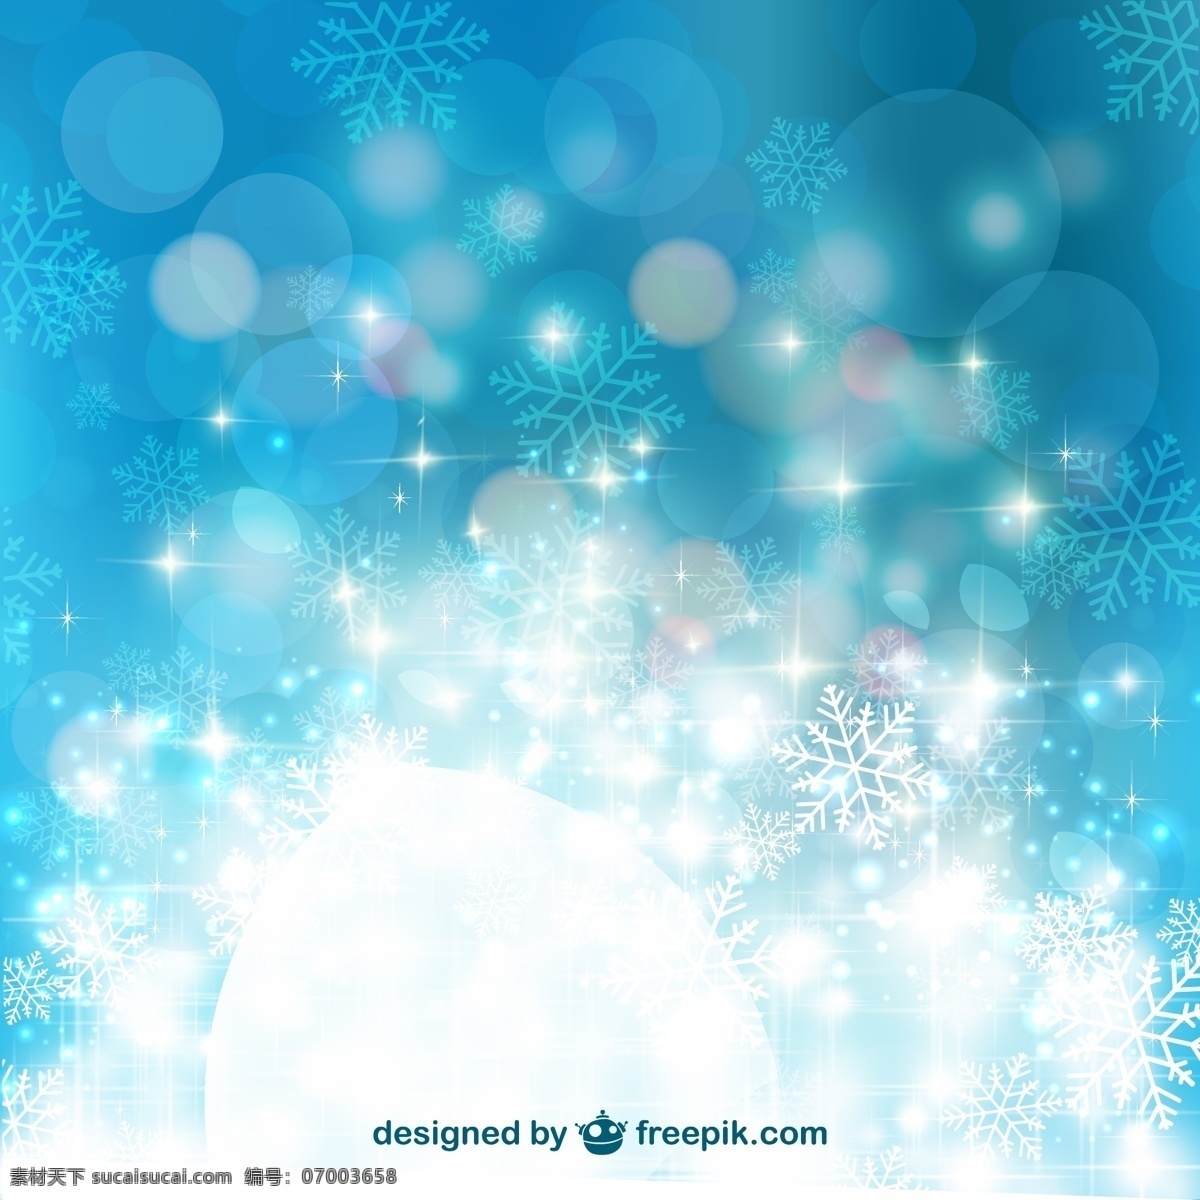 蓝色 雪花 圣诞 气氛 背景 矢量 冬季 冬天 圣诞节 圣诞节背景 矢量图 花纹花边